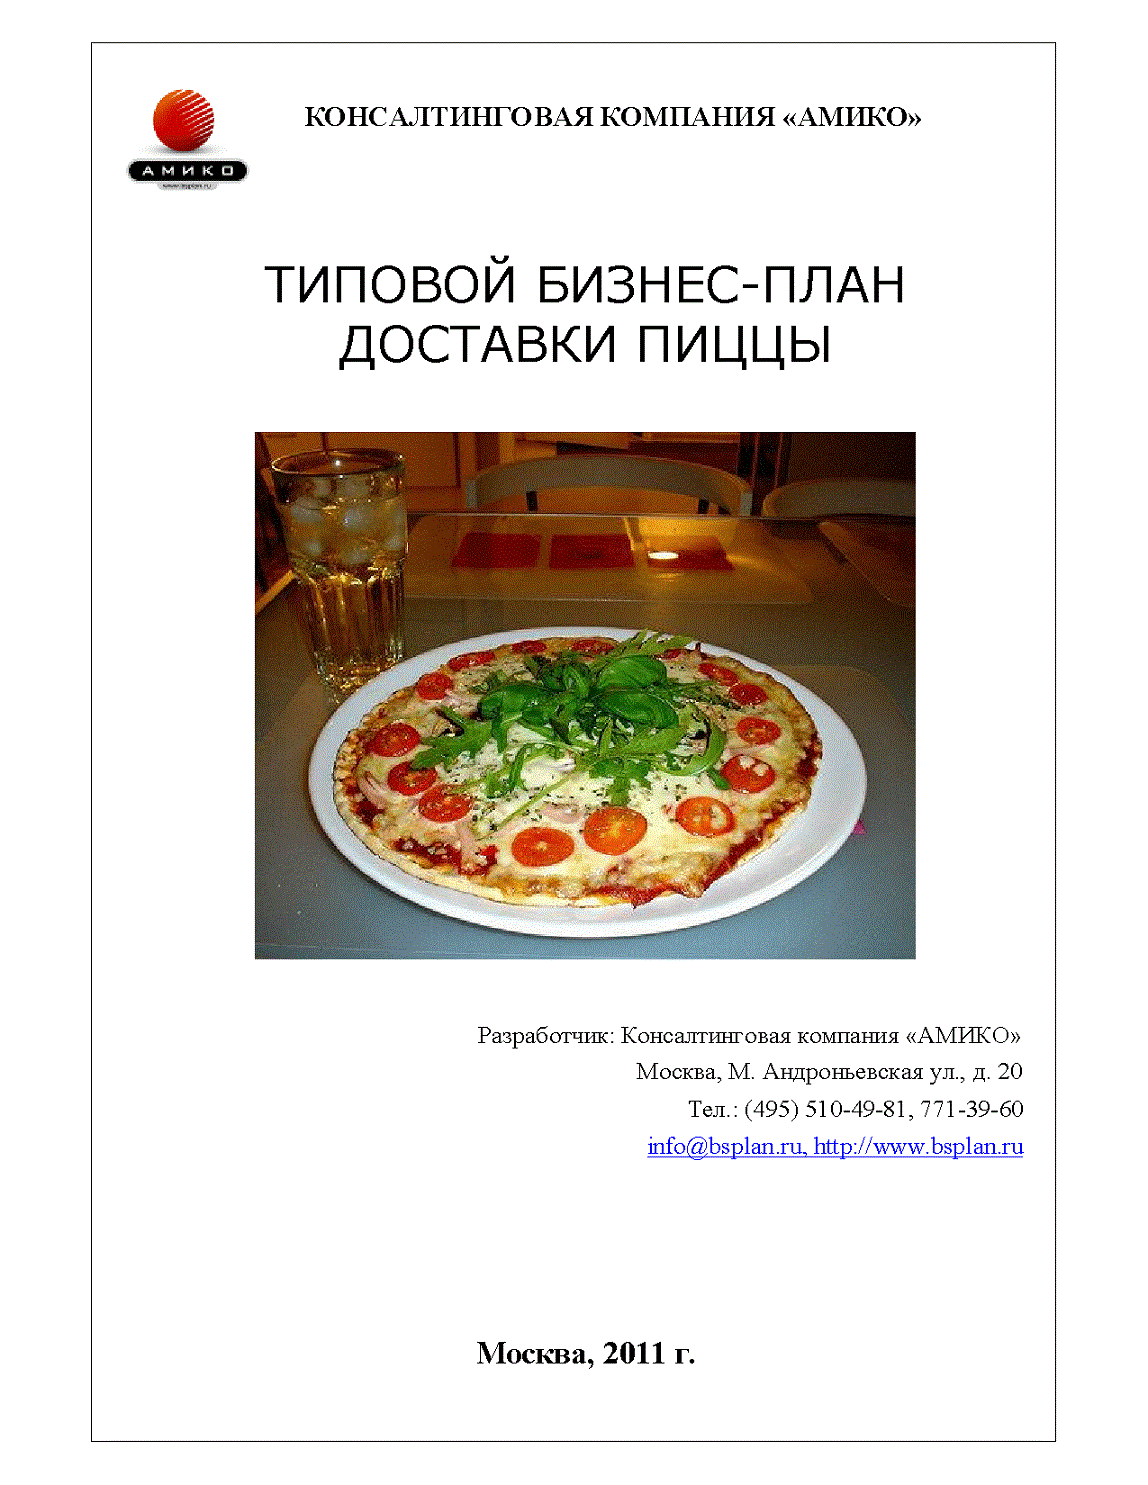 Как открыть пиццерию: документы для регистрации, бизнес-план, оборудование - fin-az.ru